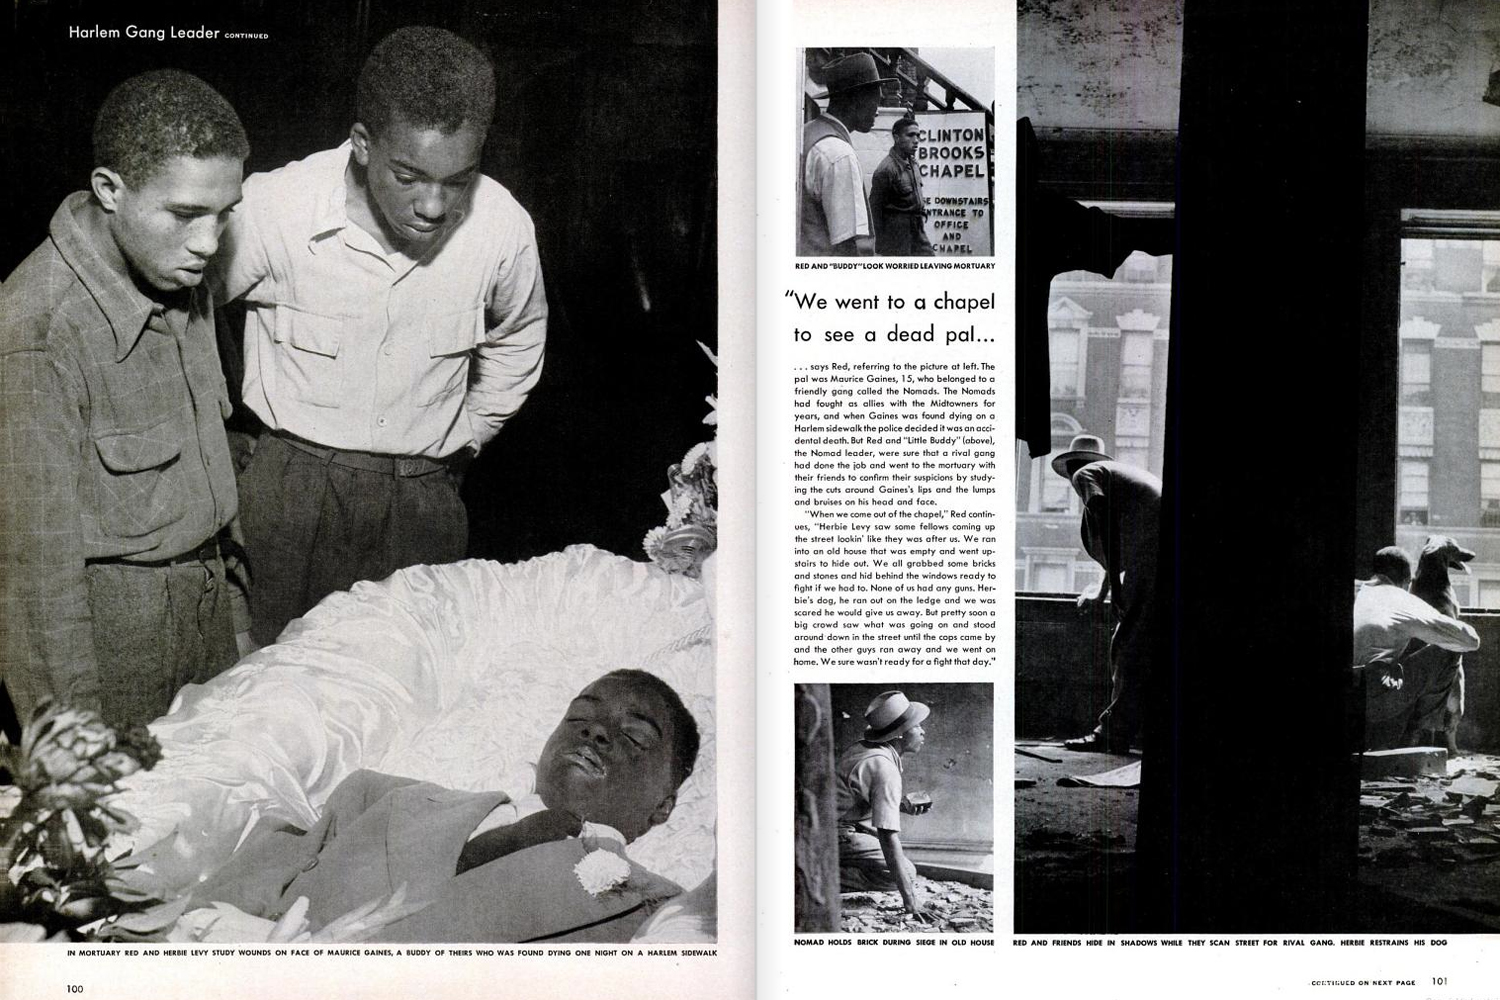 Harlem Gang Leader as published in LIFE Magazine, November 1, 1948.